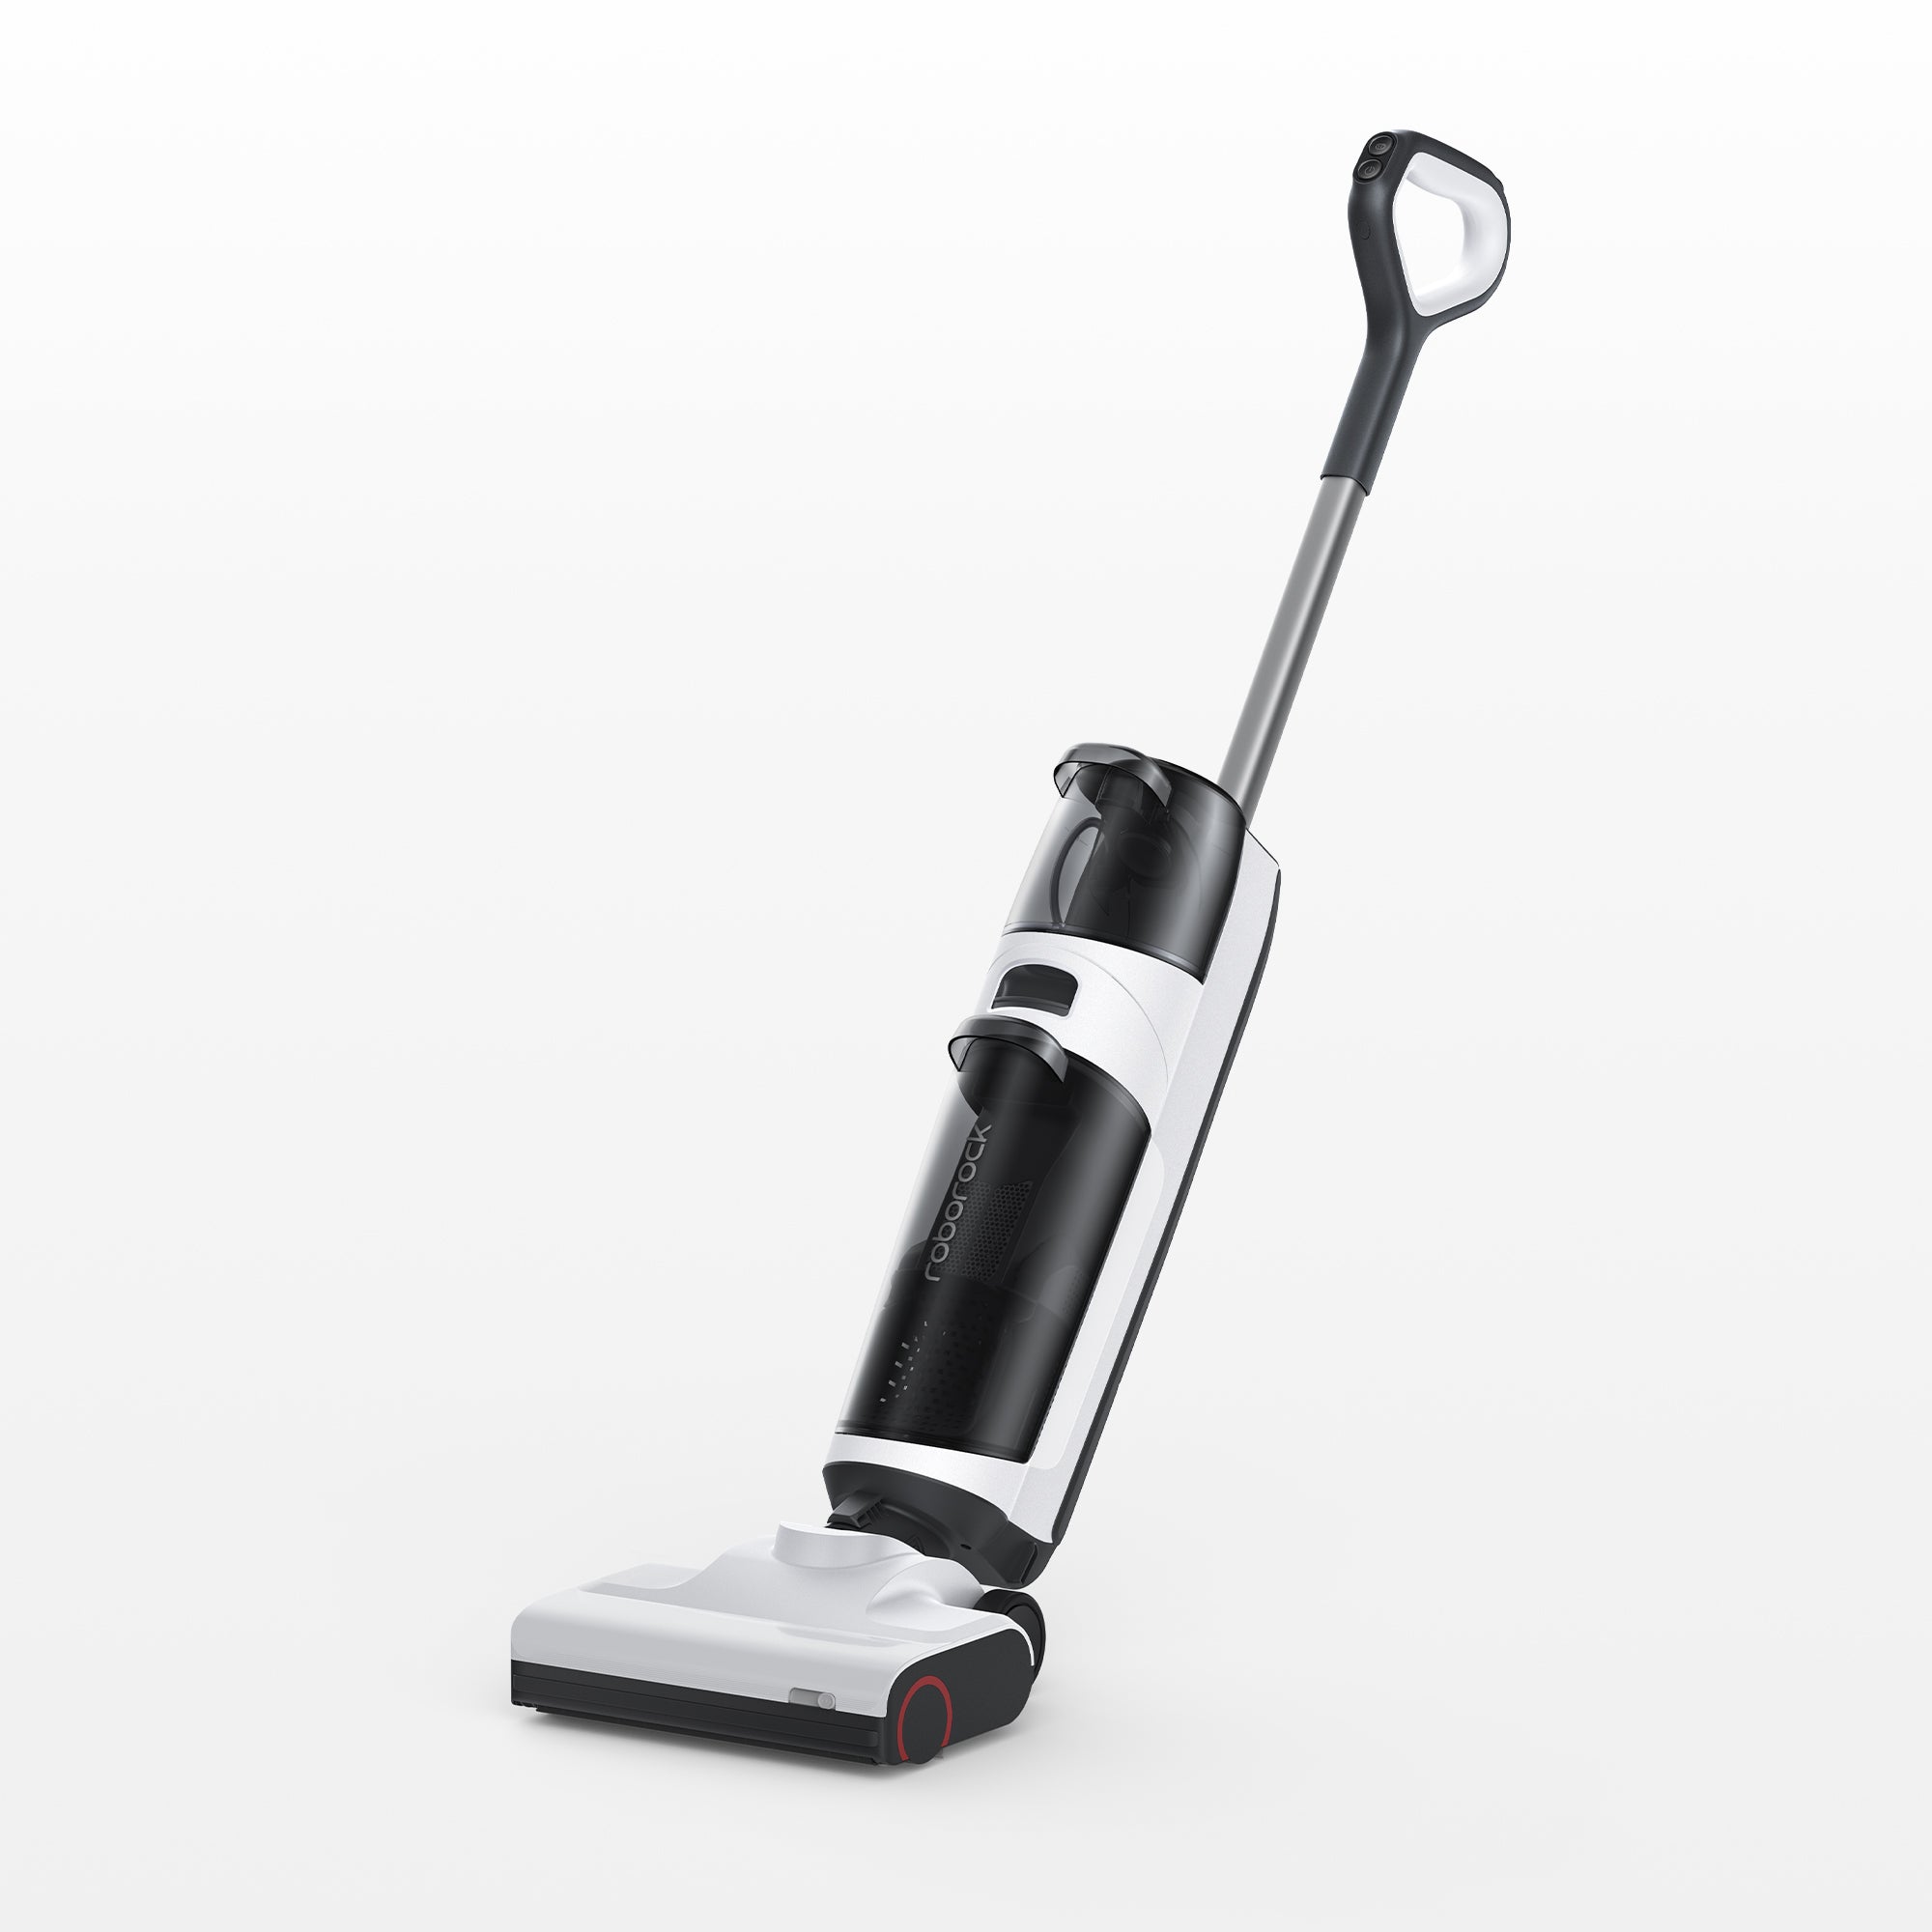 Rent Roborock S7 Vacuum & Mop Robot Cleaner from €29.90 per month